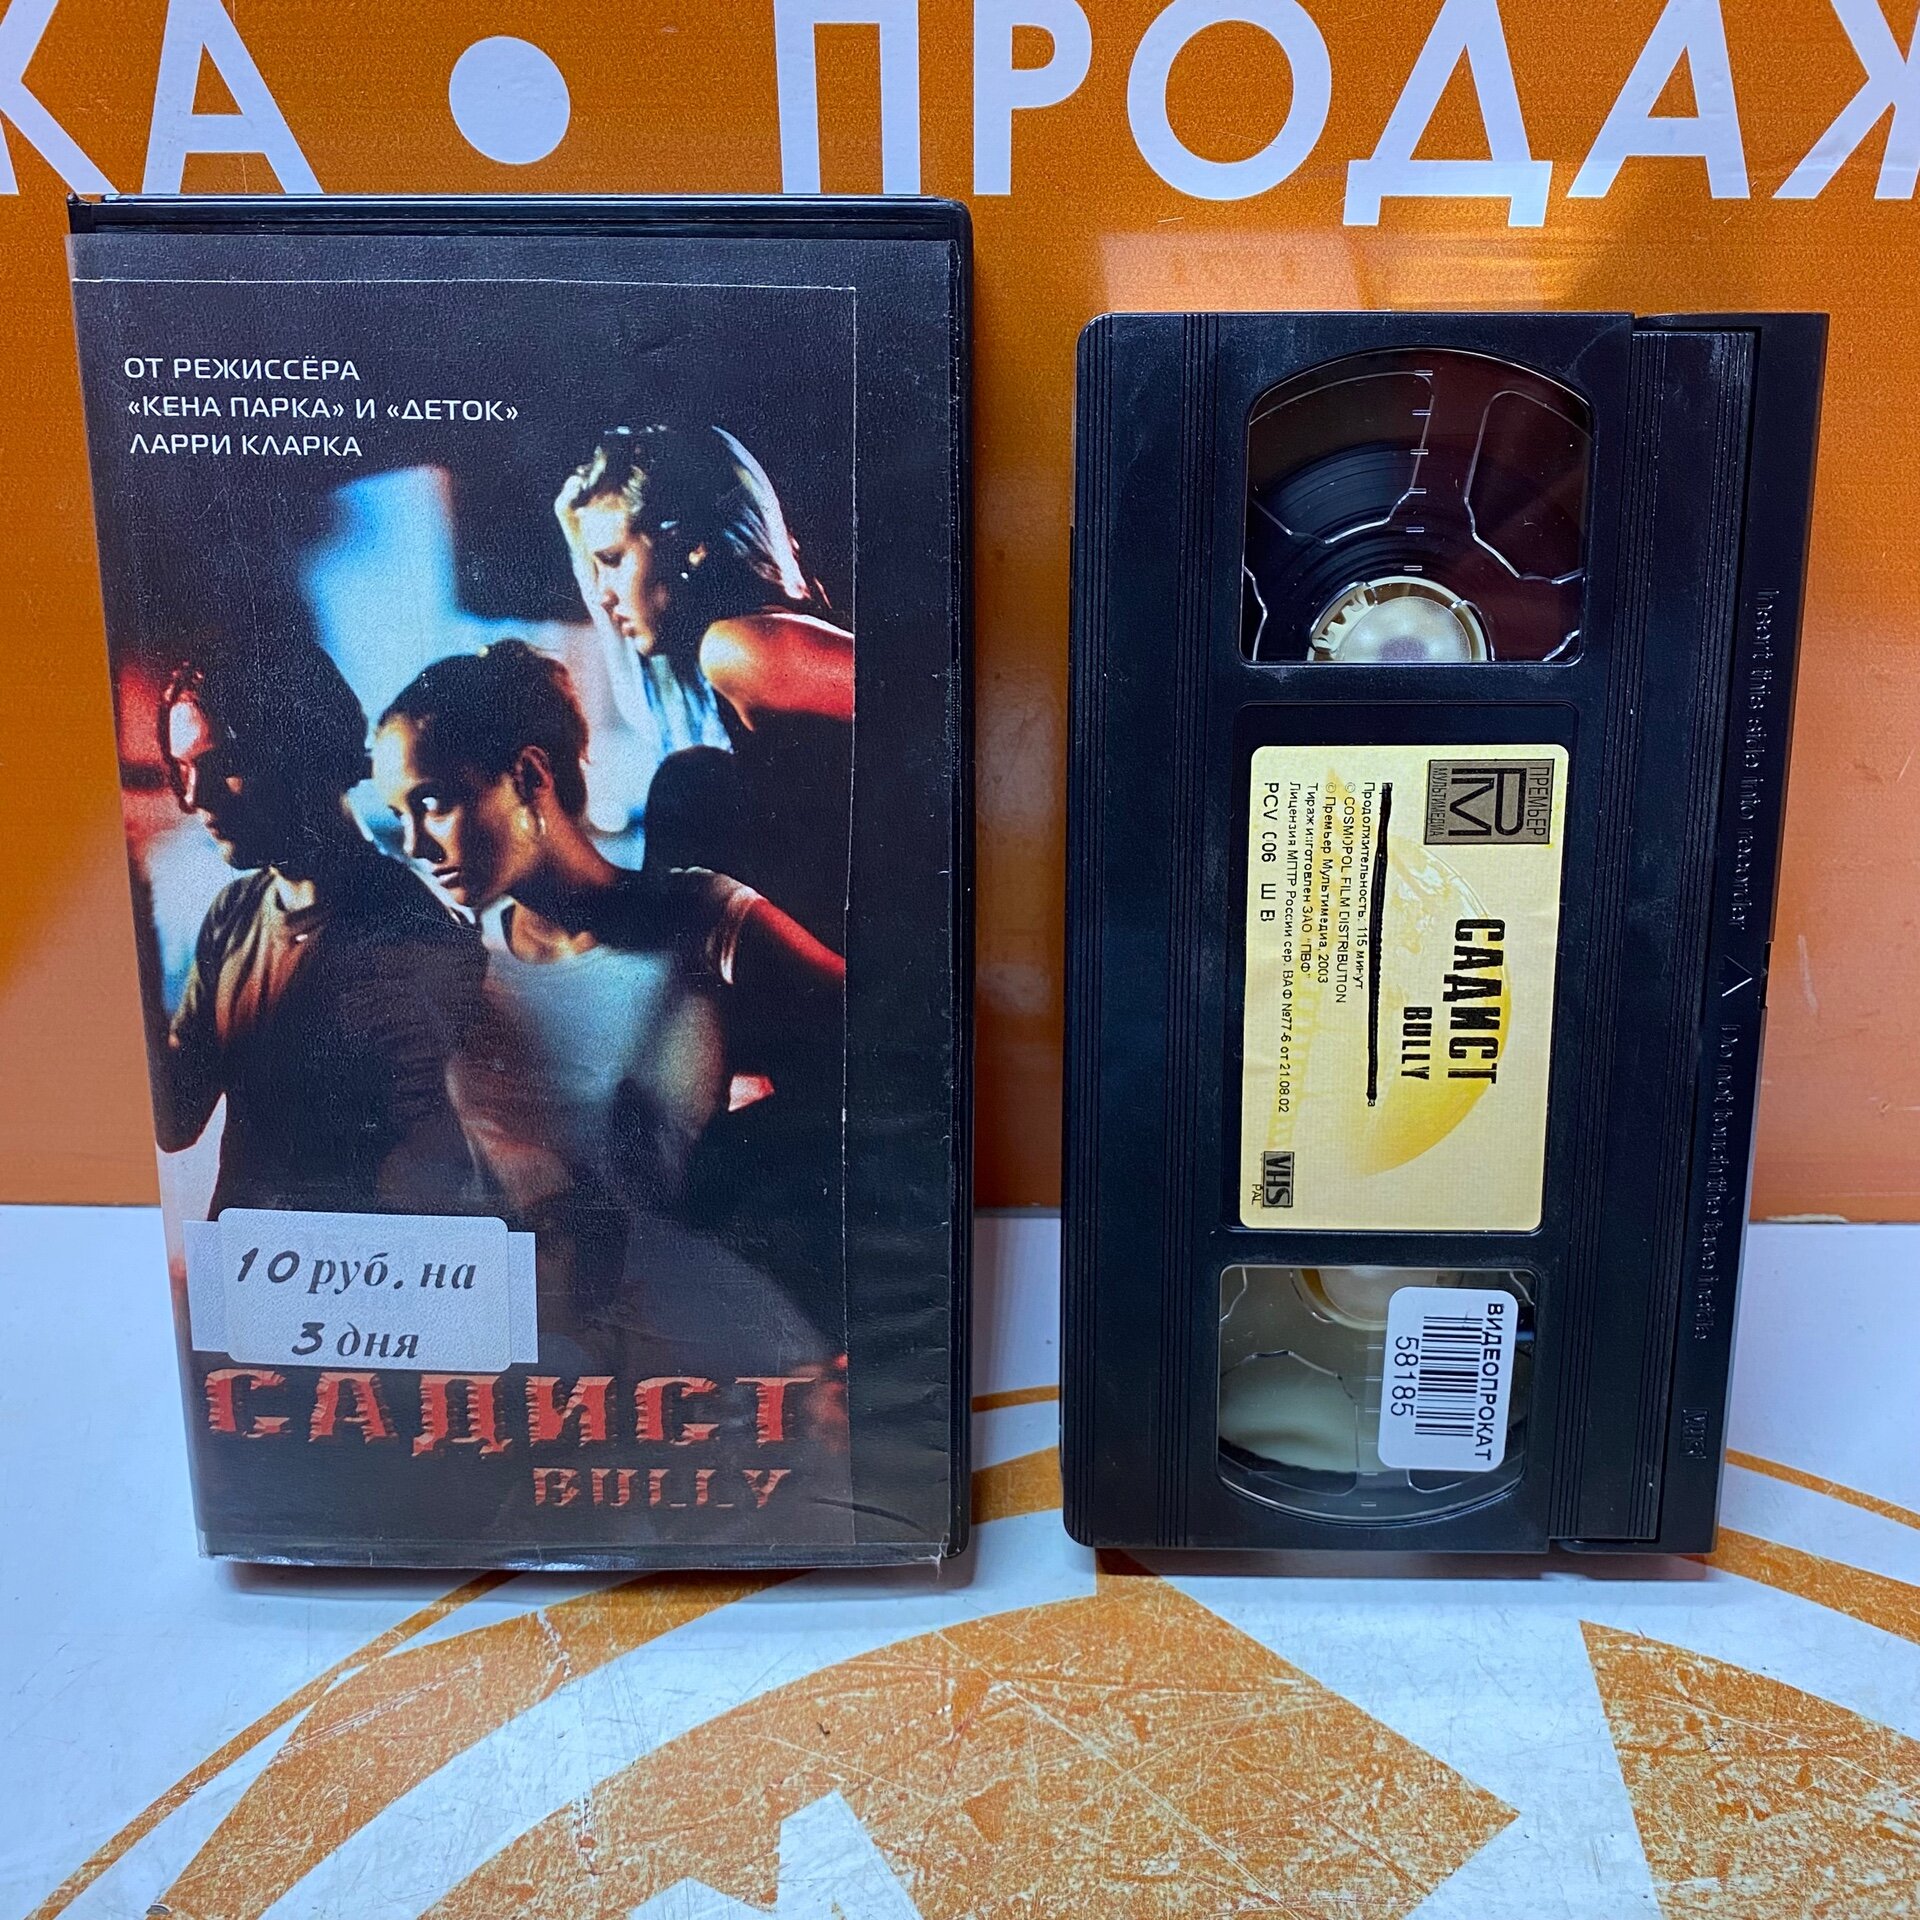 VHS-кассета "Садист"